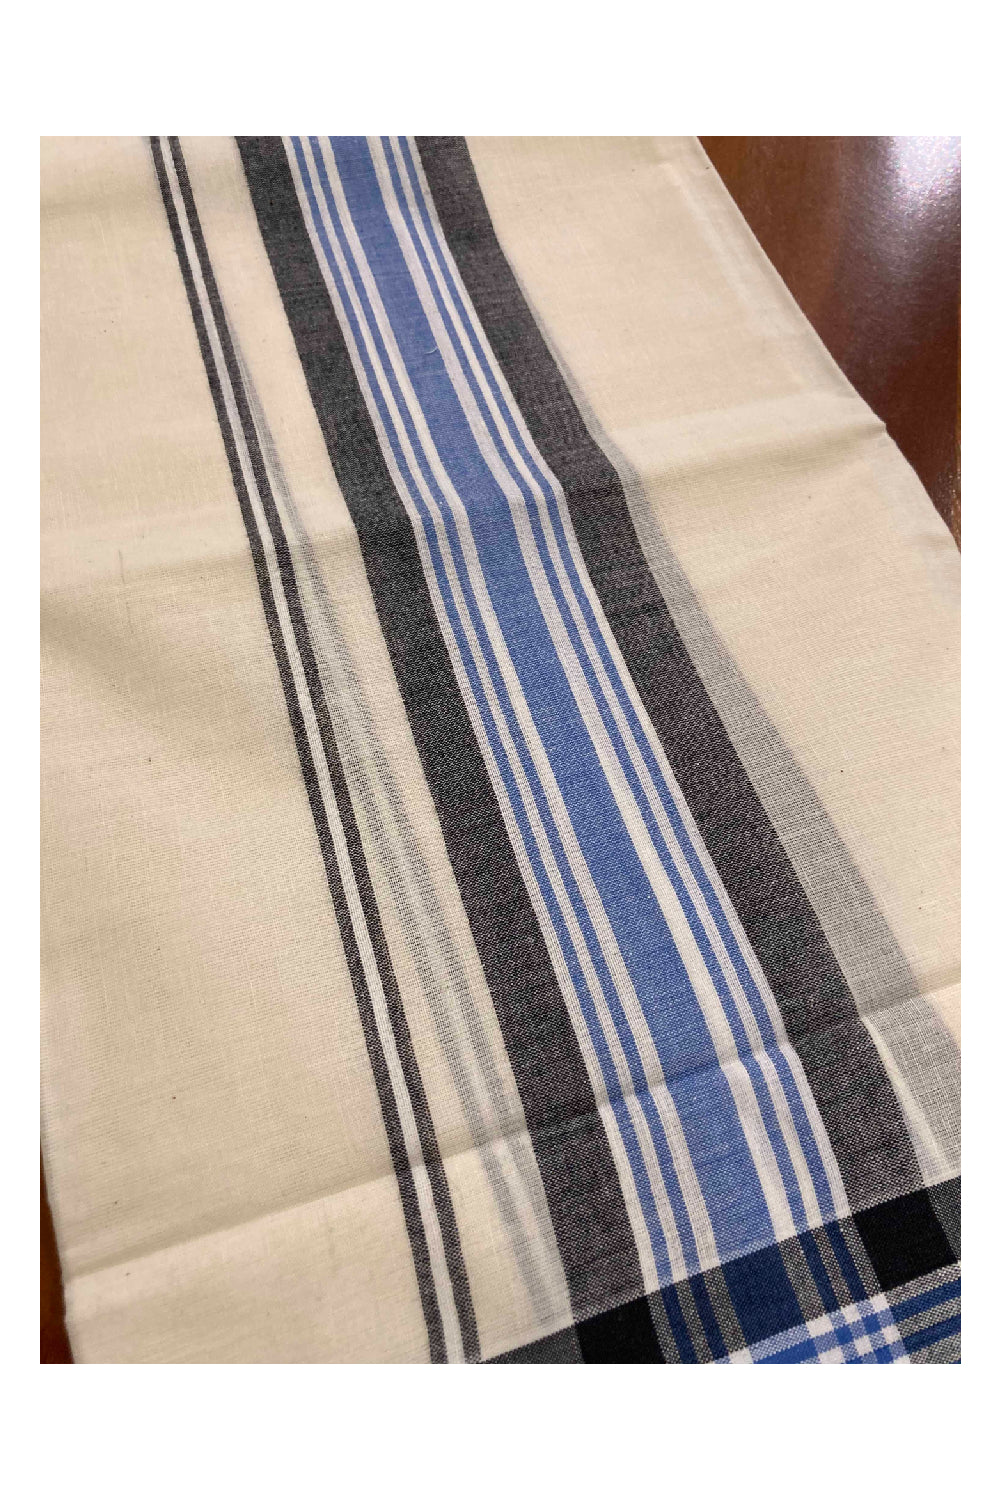 Kerala Cotton Mundum Neriyathum Single (Set Mundu) with Mulloth Design Black and Blue Border (Extra Soft Cotton)